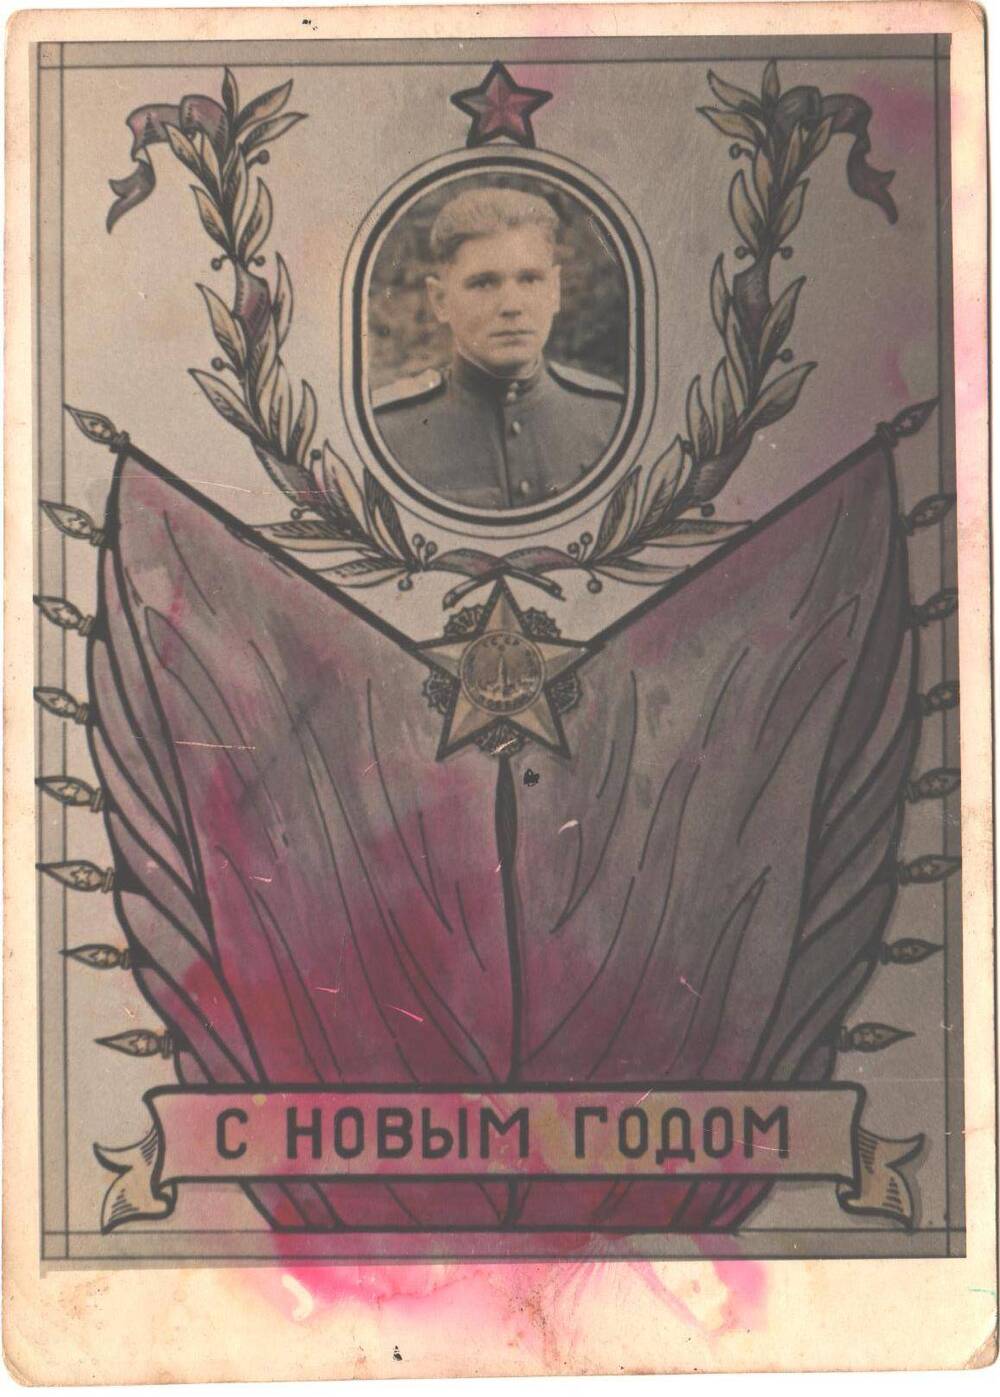 Молодой мужчина в военной форме Советской Армии, изображены лавровые ветви, пятиконечные звезды, знамена, надпись С Новым годом.